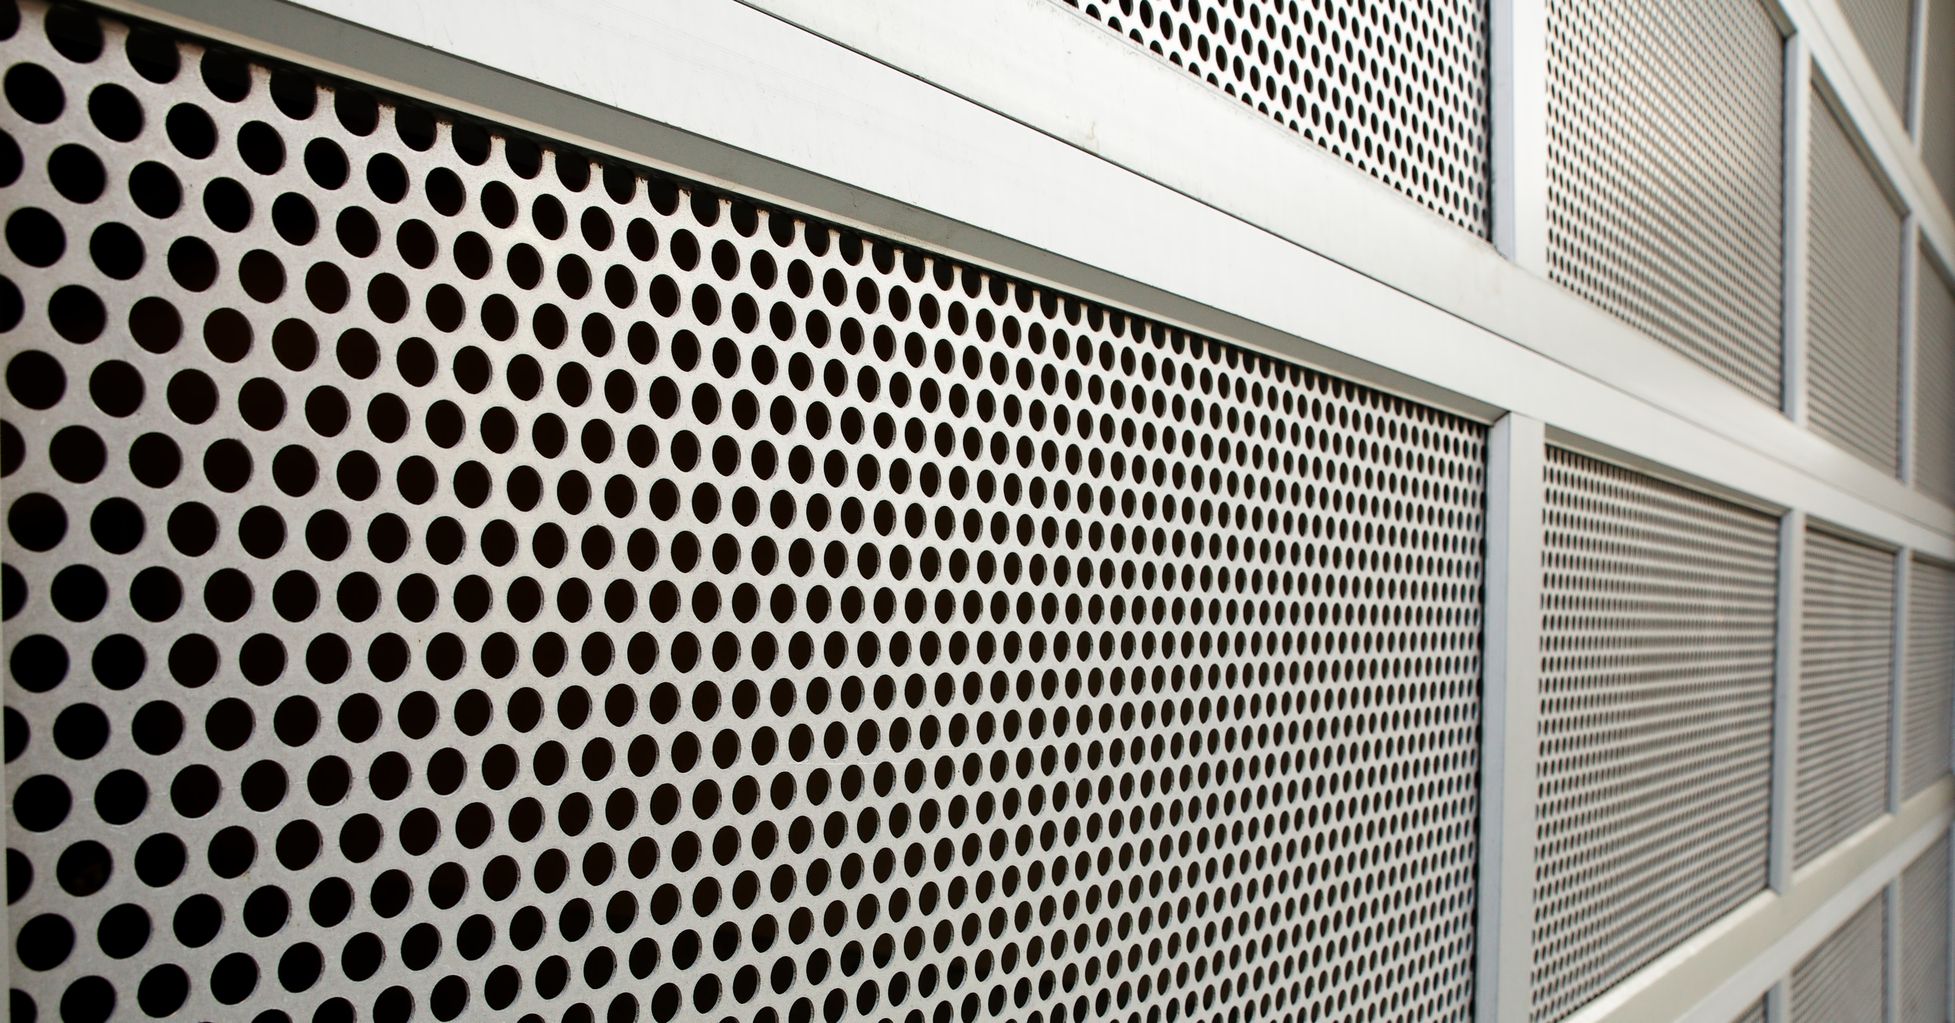 Perforated Security Screen Metal Security Screens Material